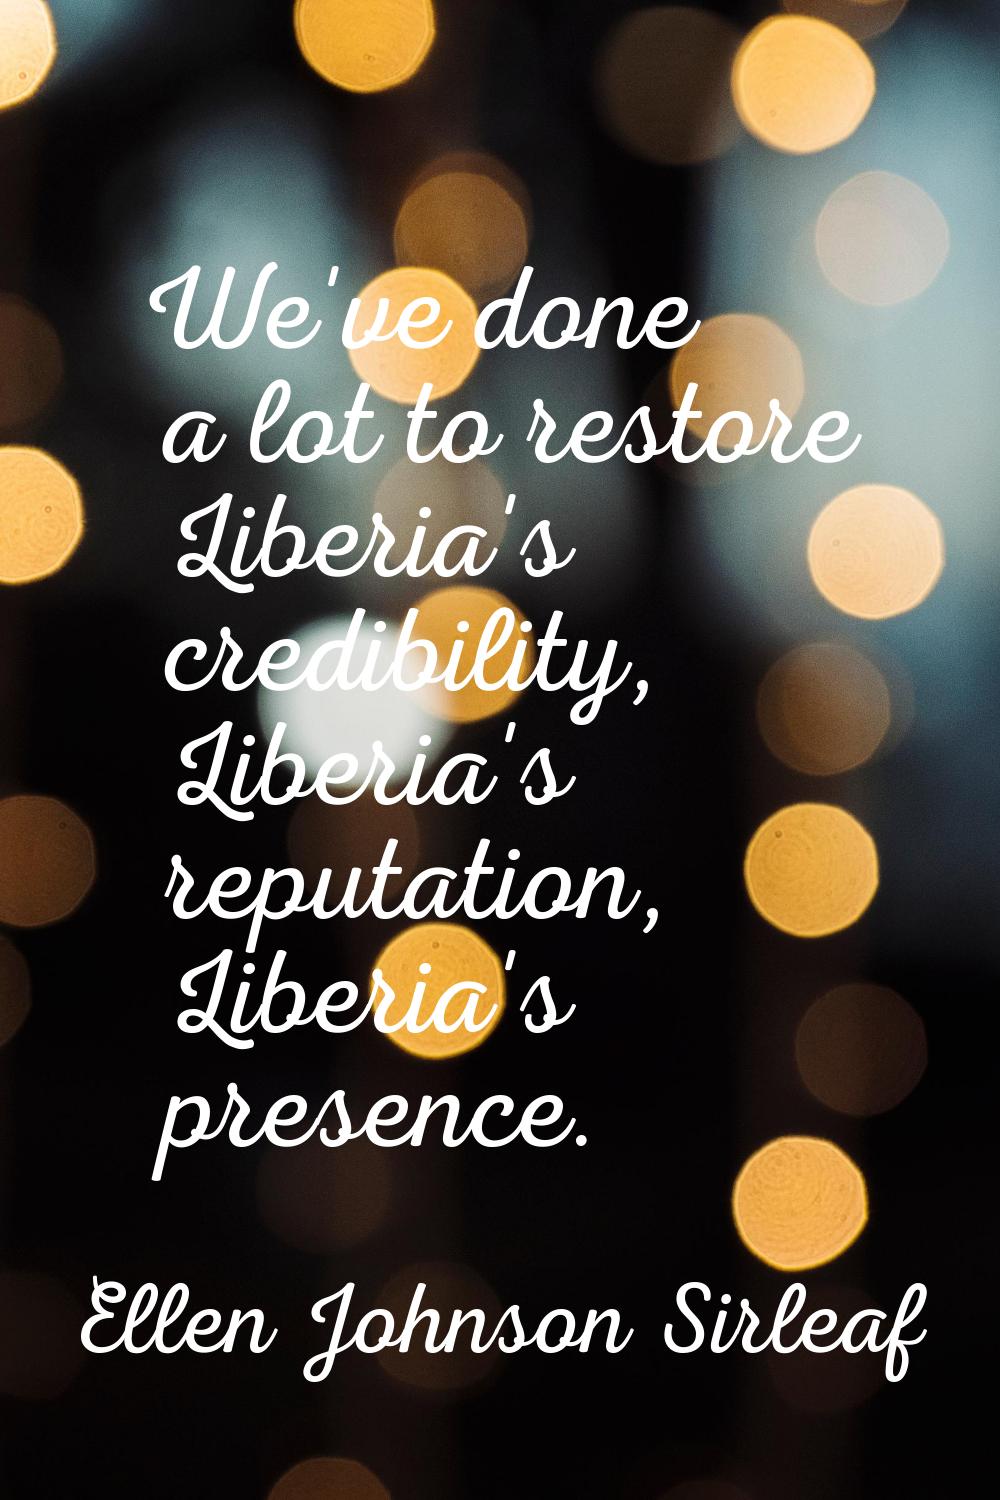 We've done a lot to restore Liberia's credibility, Liberia's reputation, Liberia's presence.